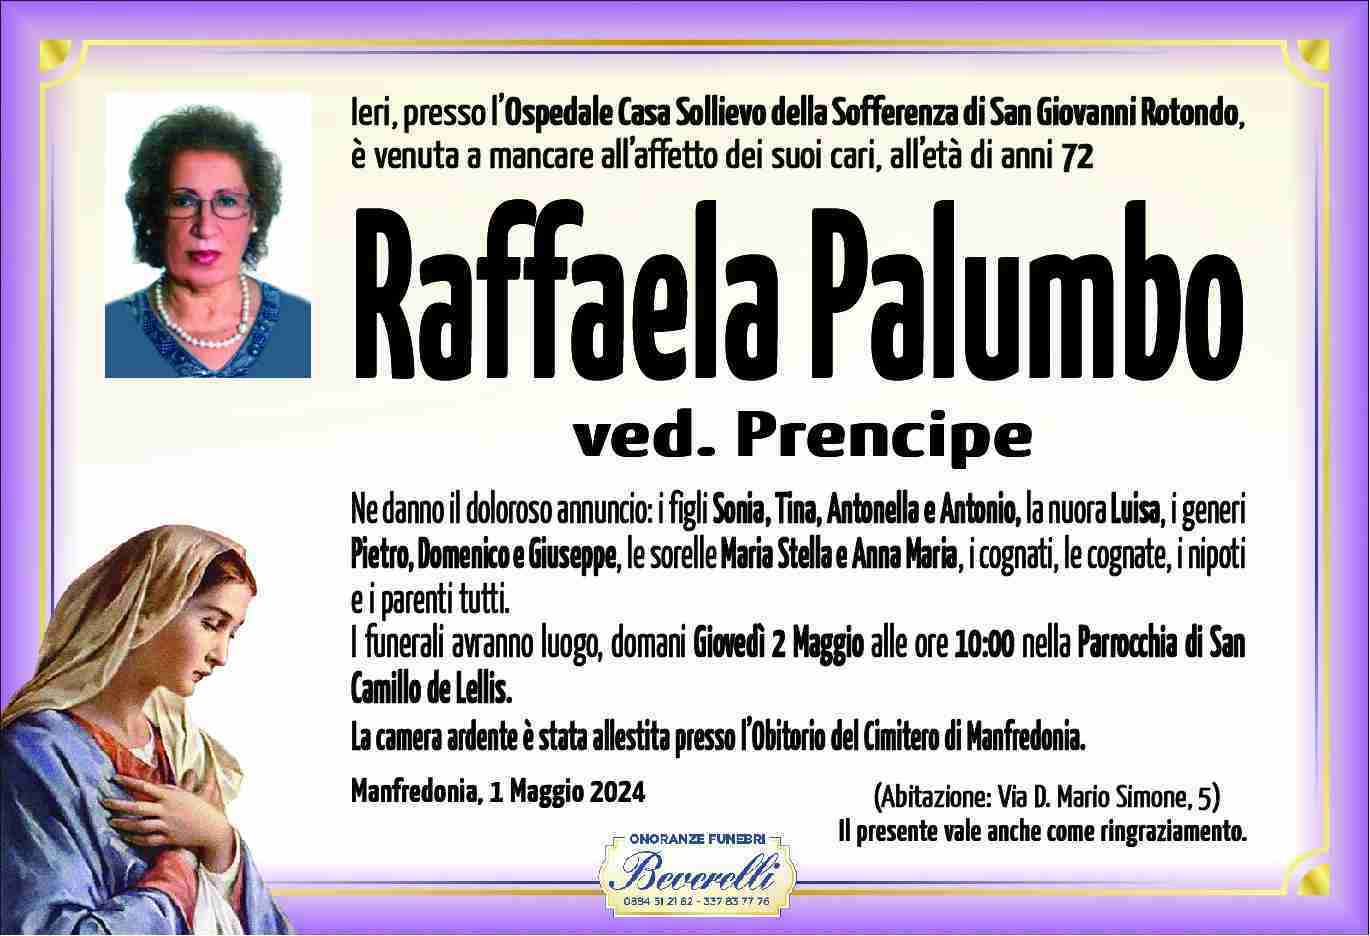 Raffaela Palumbo